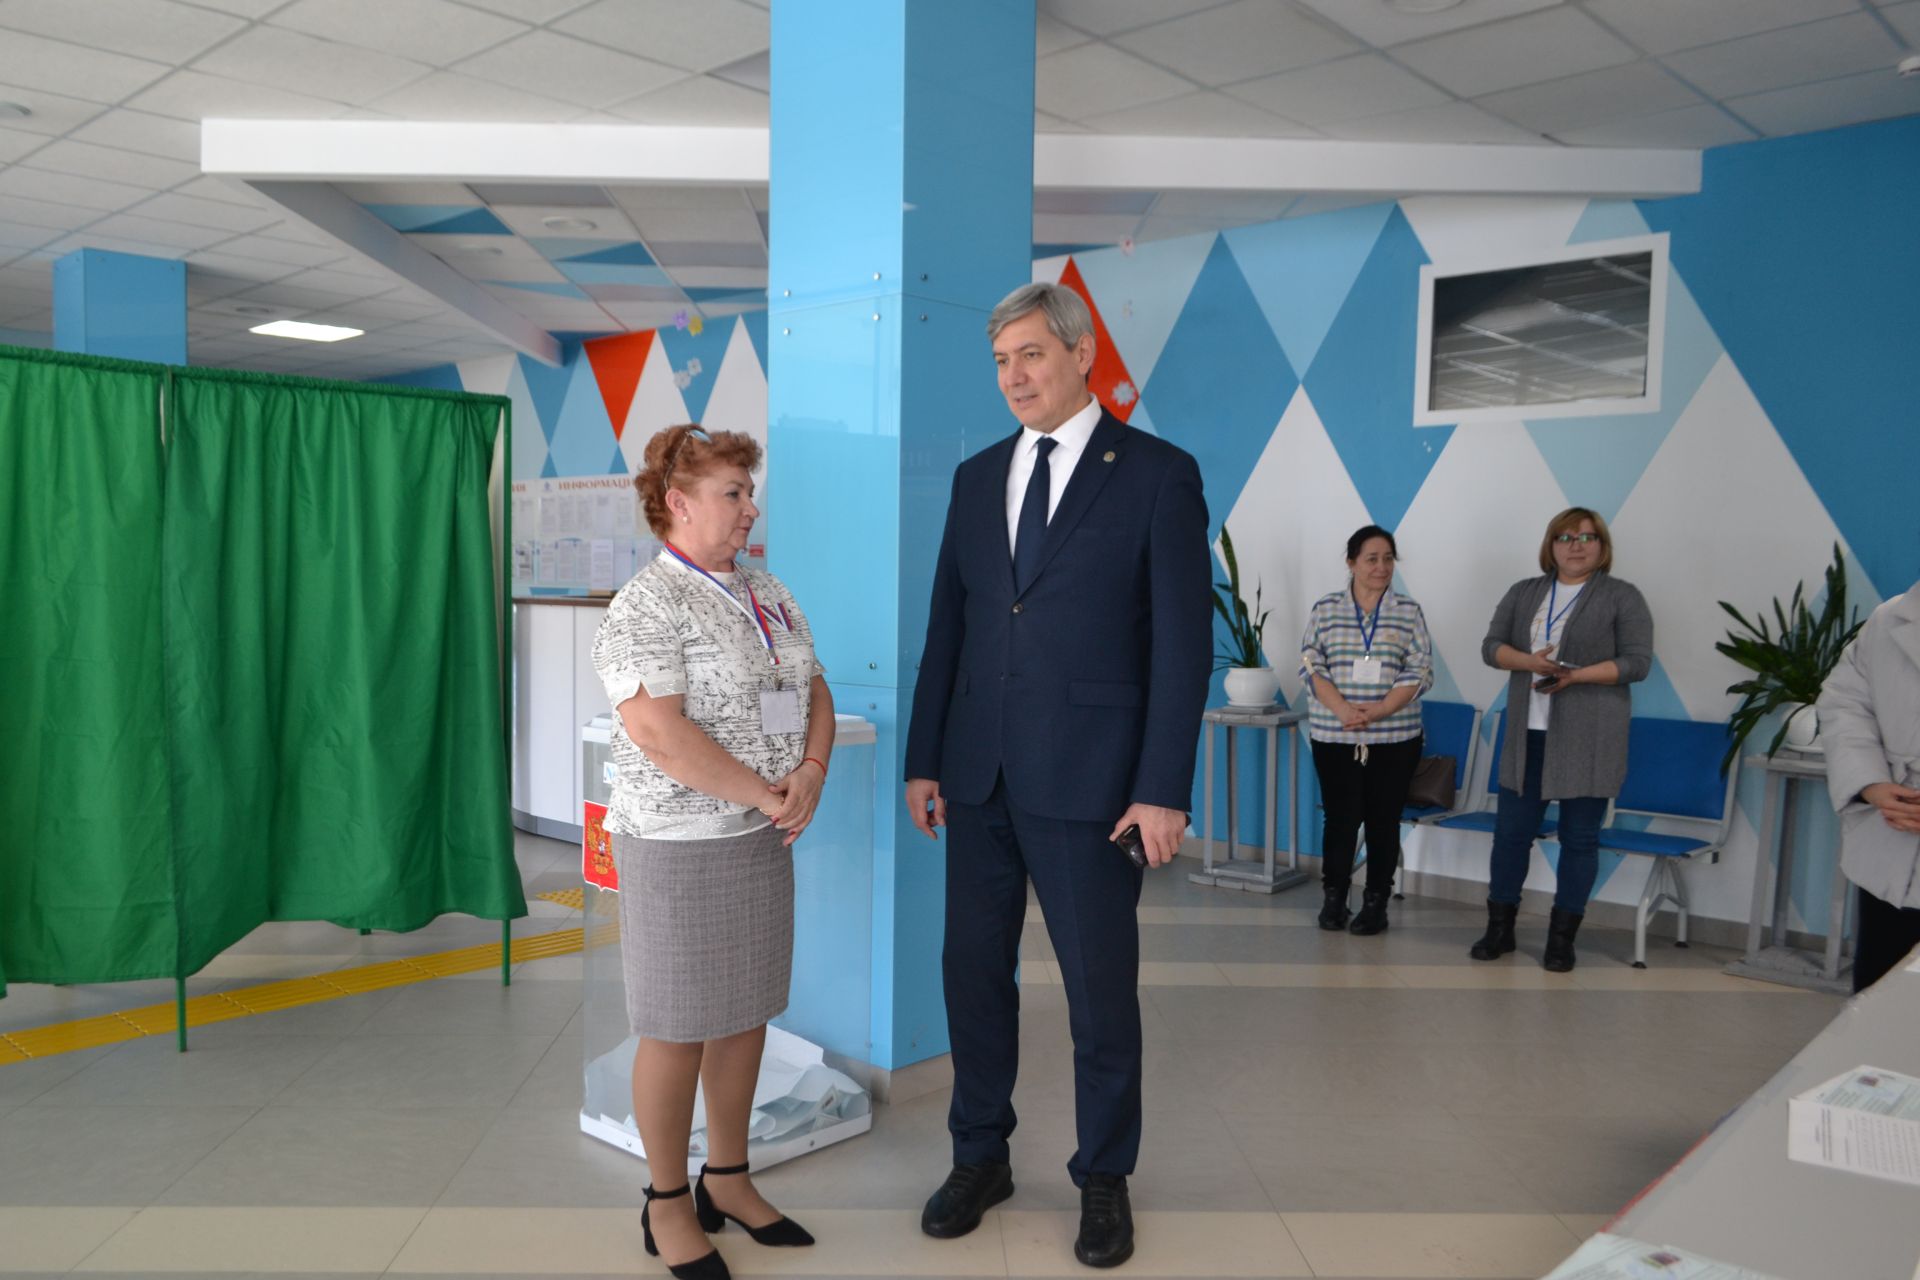 Роман Шайхутдинов посетил избирательные участки в Верхнем Услоне